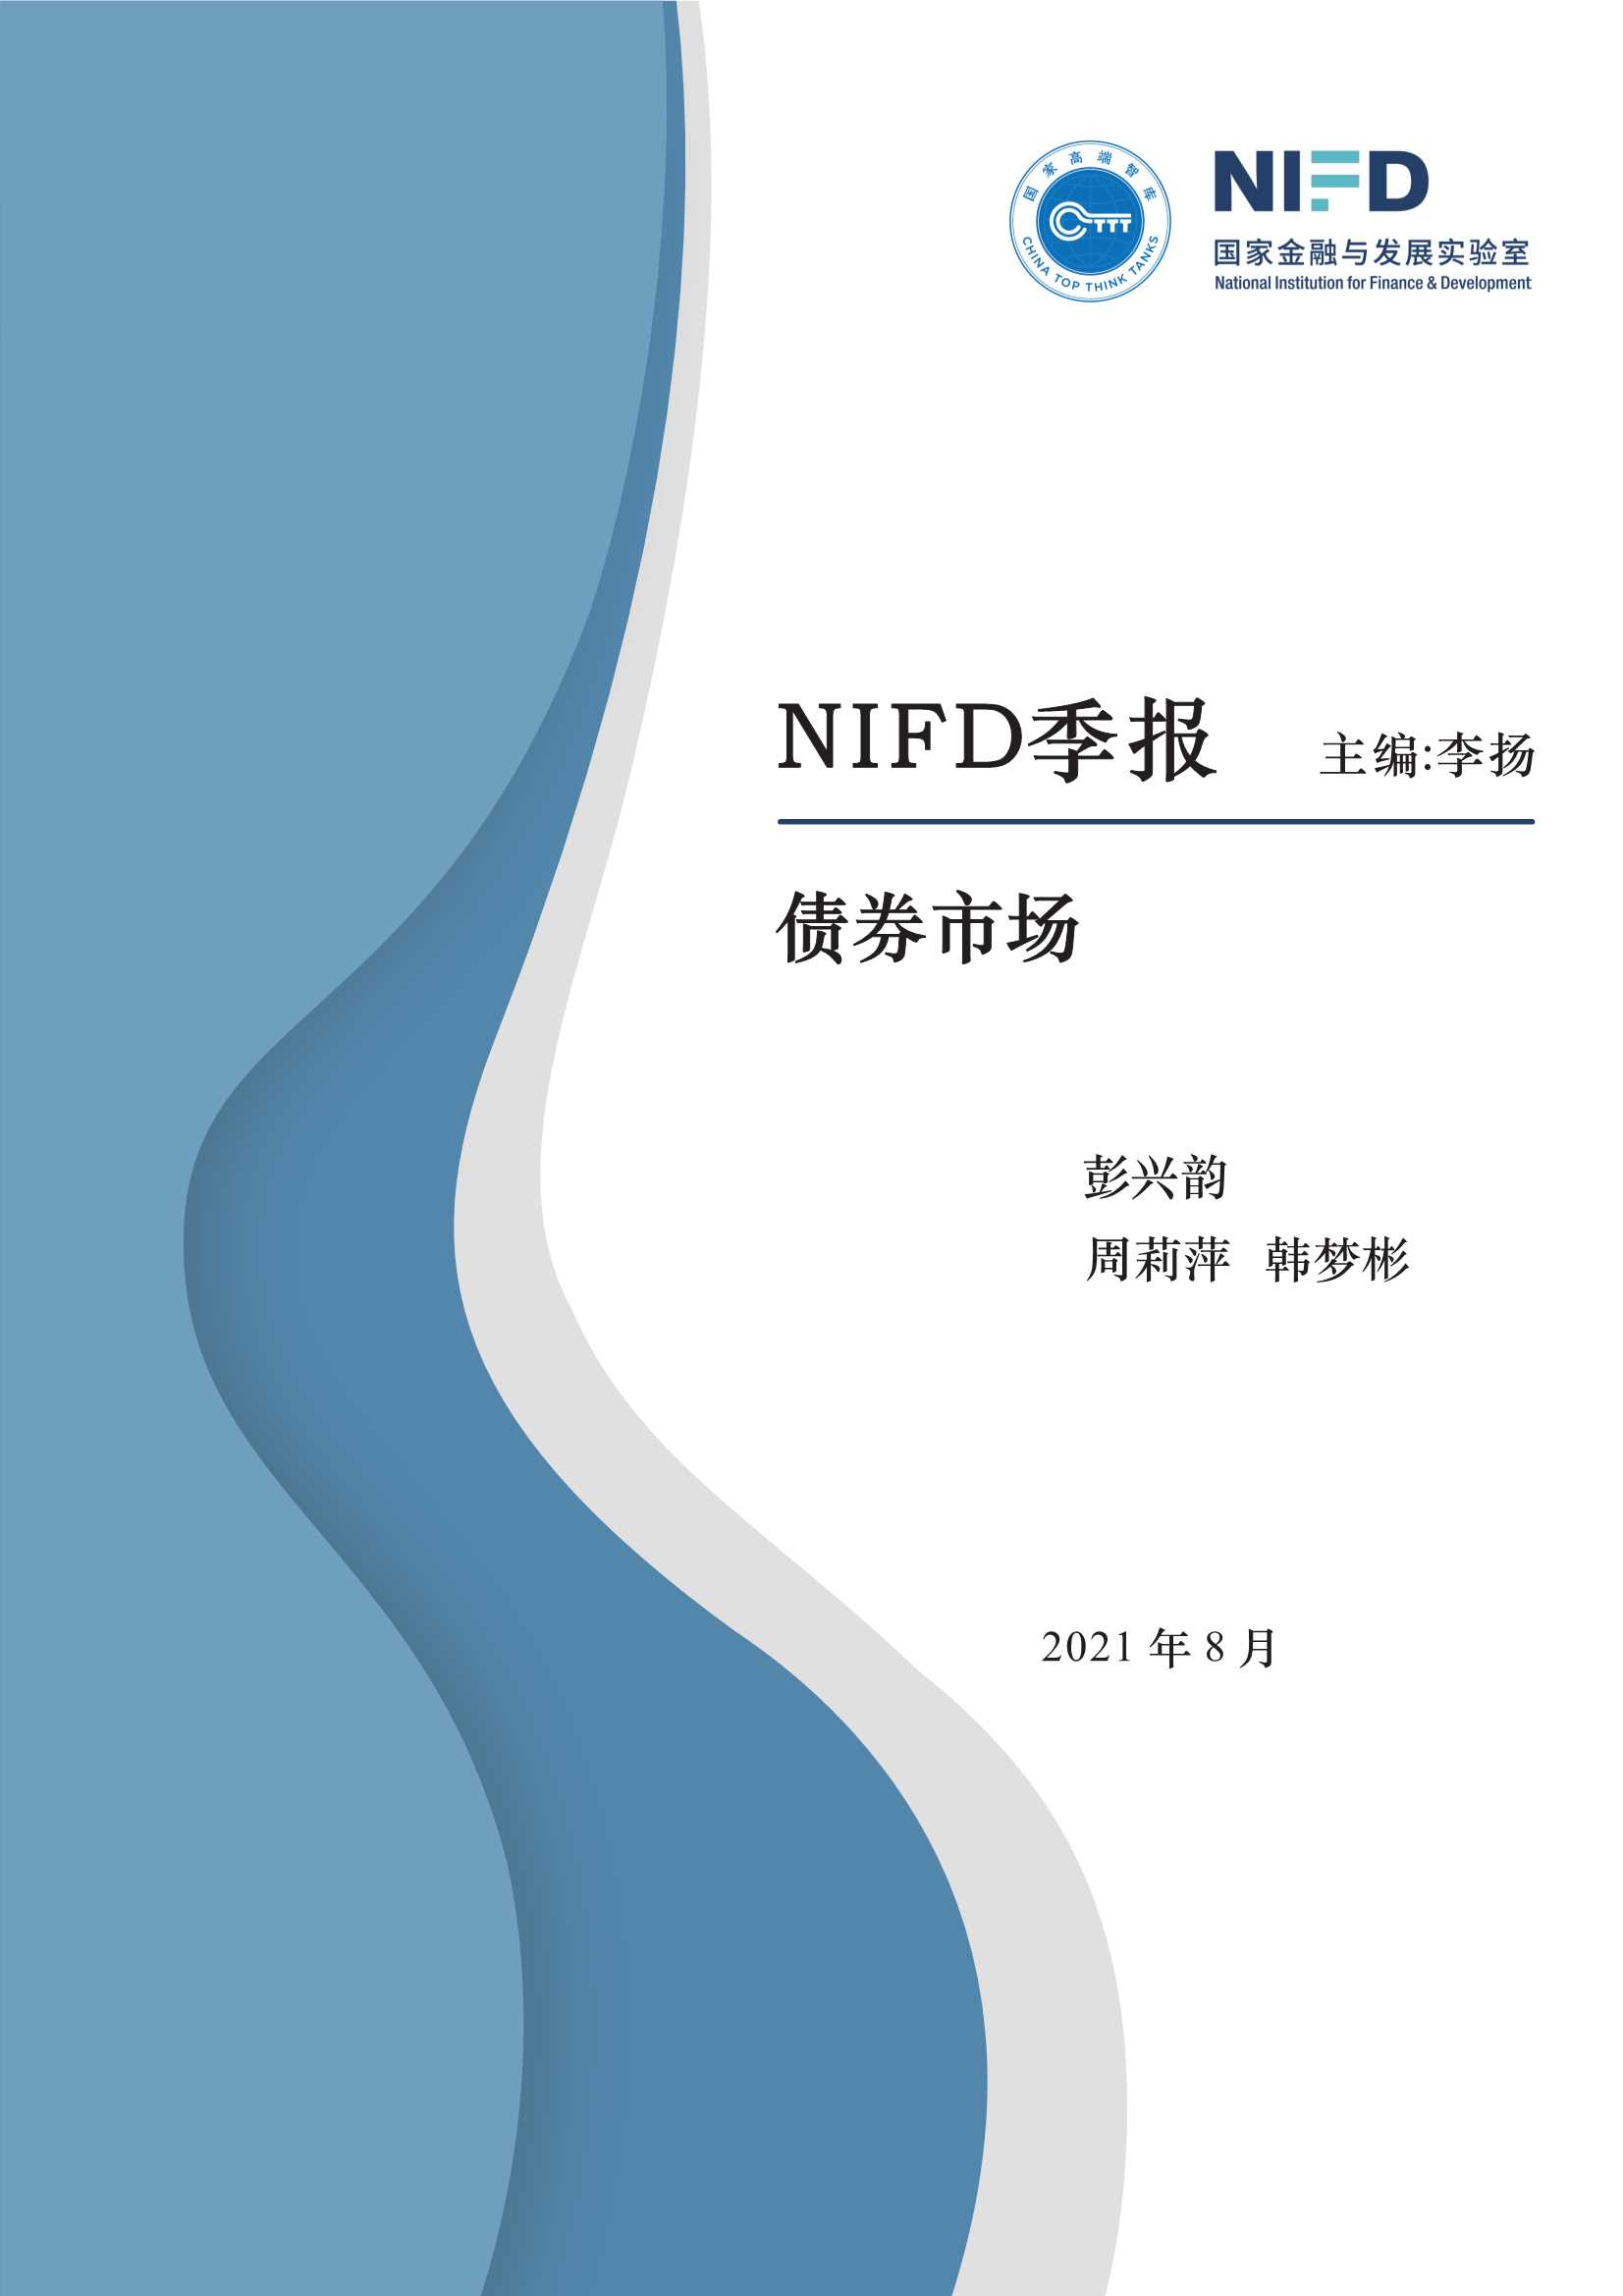 NIFD-2021Q2债券市场-2021.08-18页